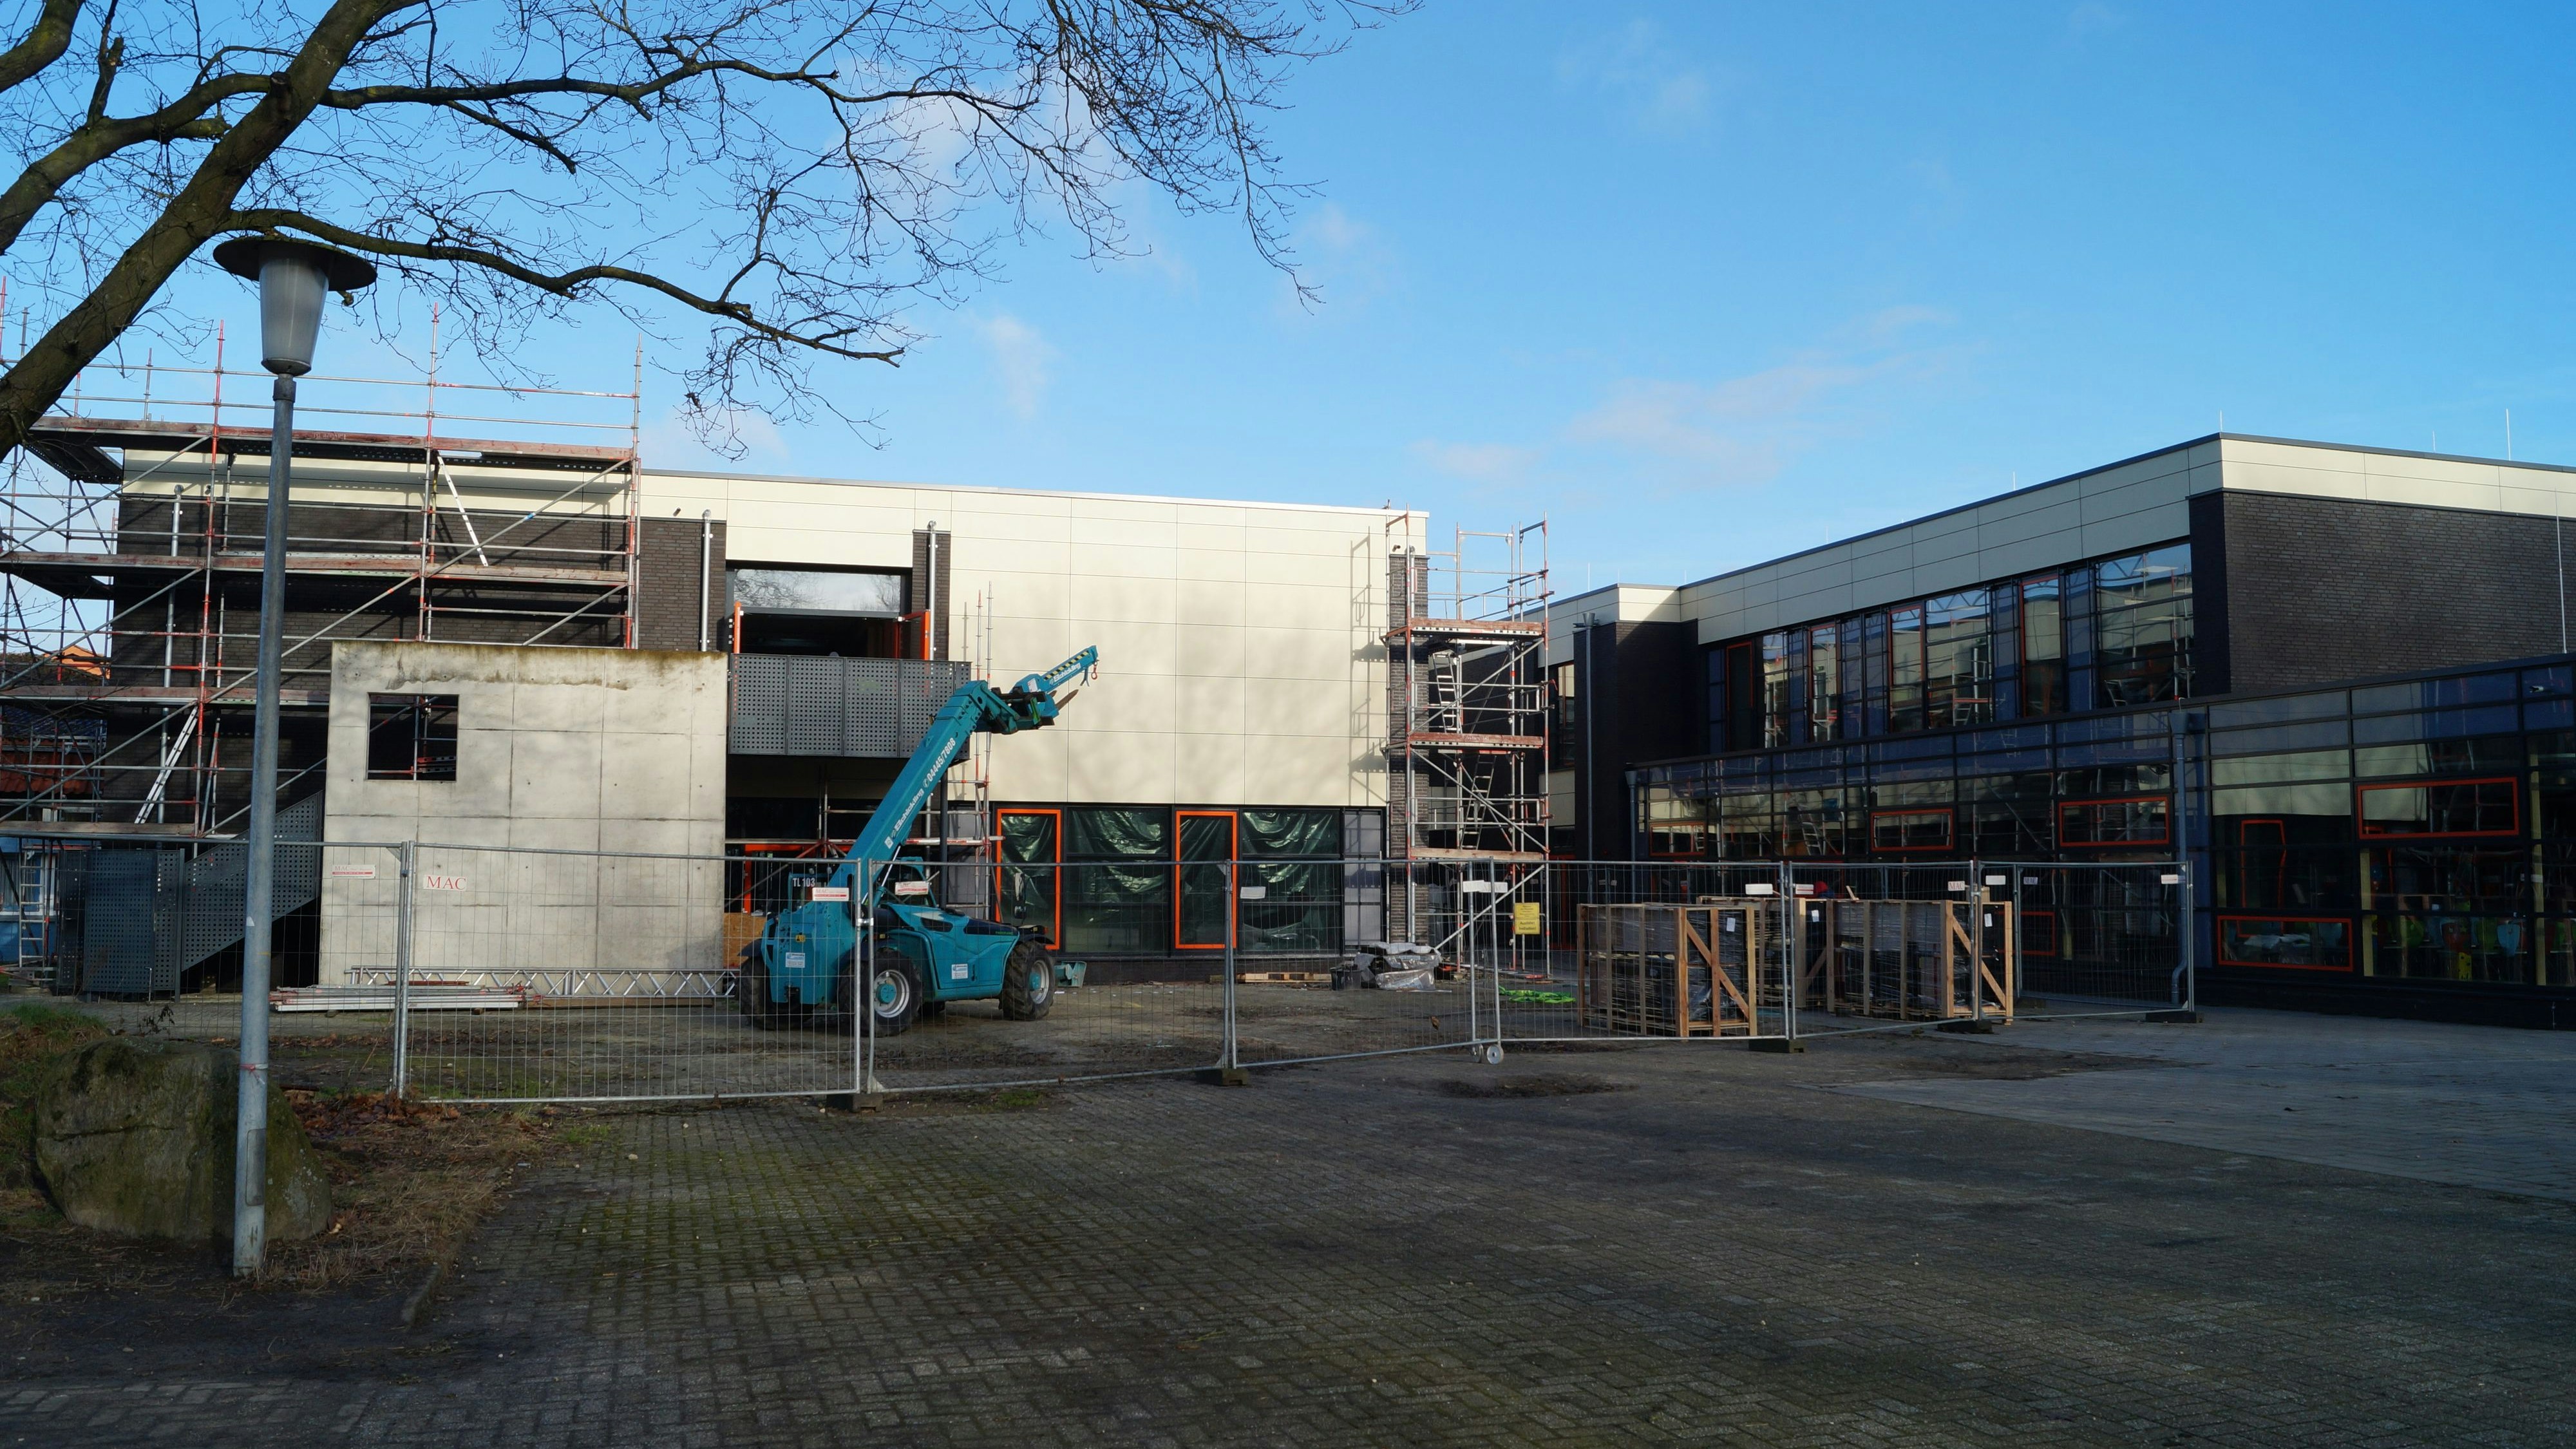 Endspurt: Die Sanierung des Bauteils fünf an der Visbeker Benedikt-Schule soll bis Mai abgeschlossen sein. Optisch soll das Gebäude dem bereits fertiggestellten Bauteil sechs mit der Mensa (rechts) gleichen. Foto: C. Meyer